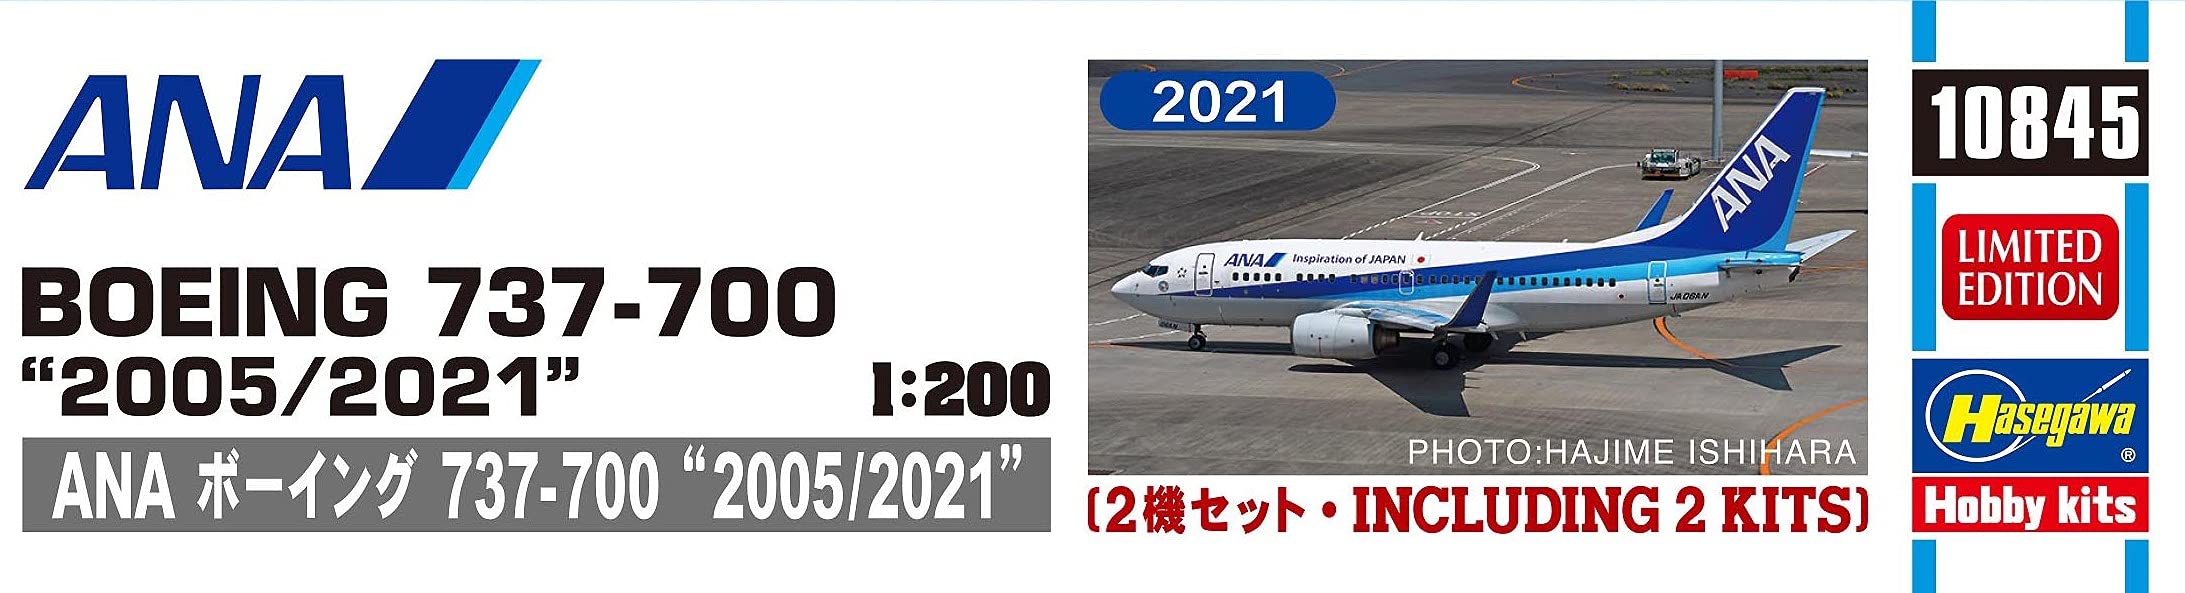 HASEGAWA 1/200 Ana Boeing 737-700 '2005/2011' Maquette Plastique